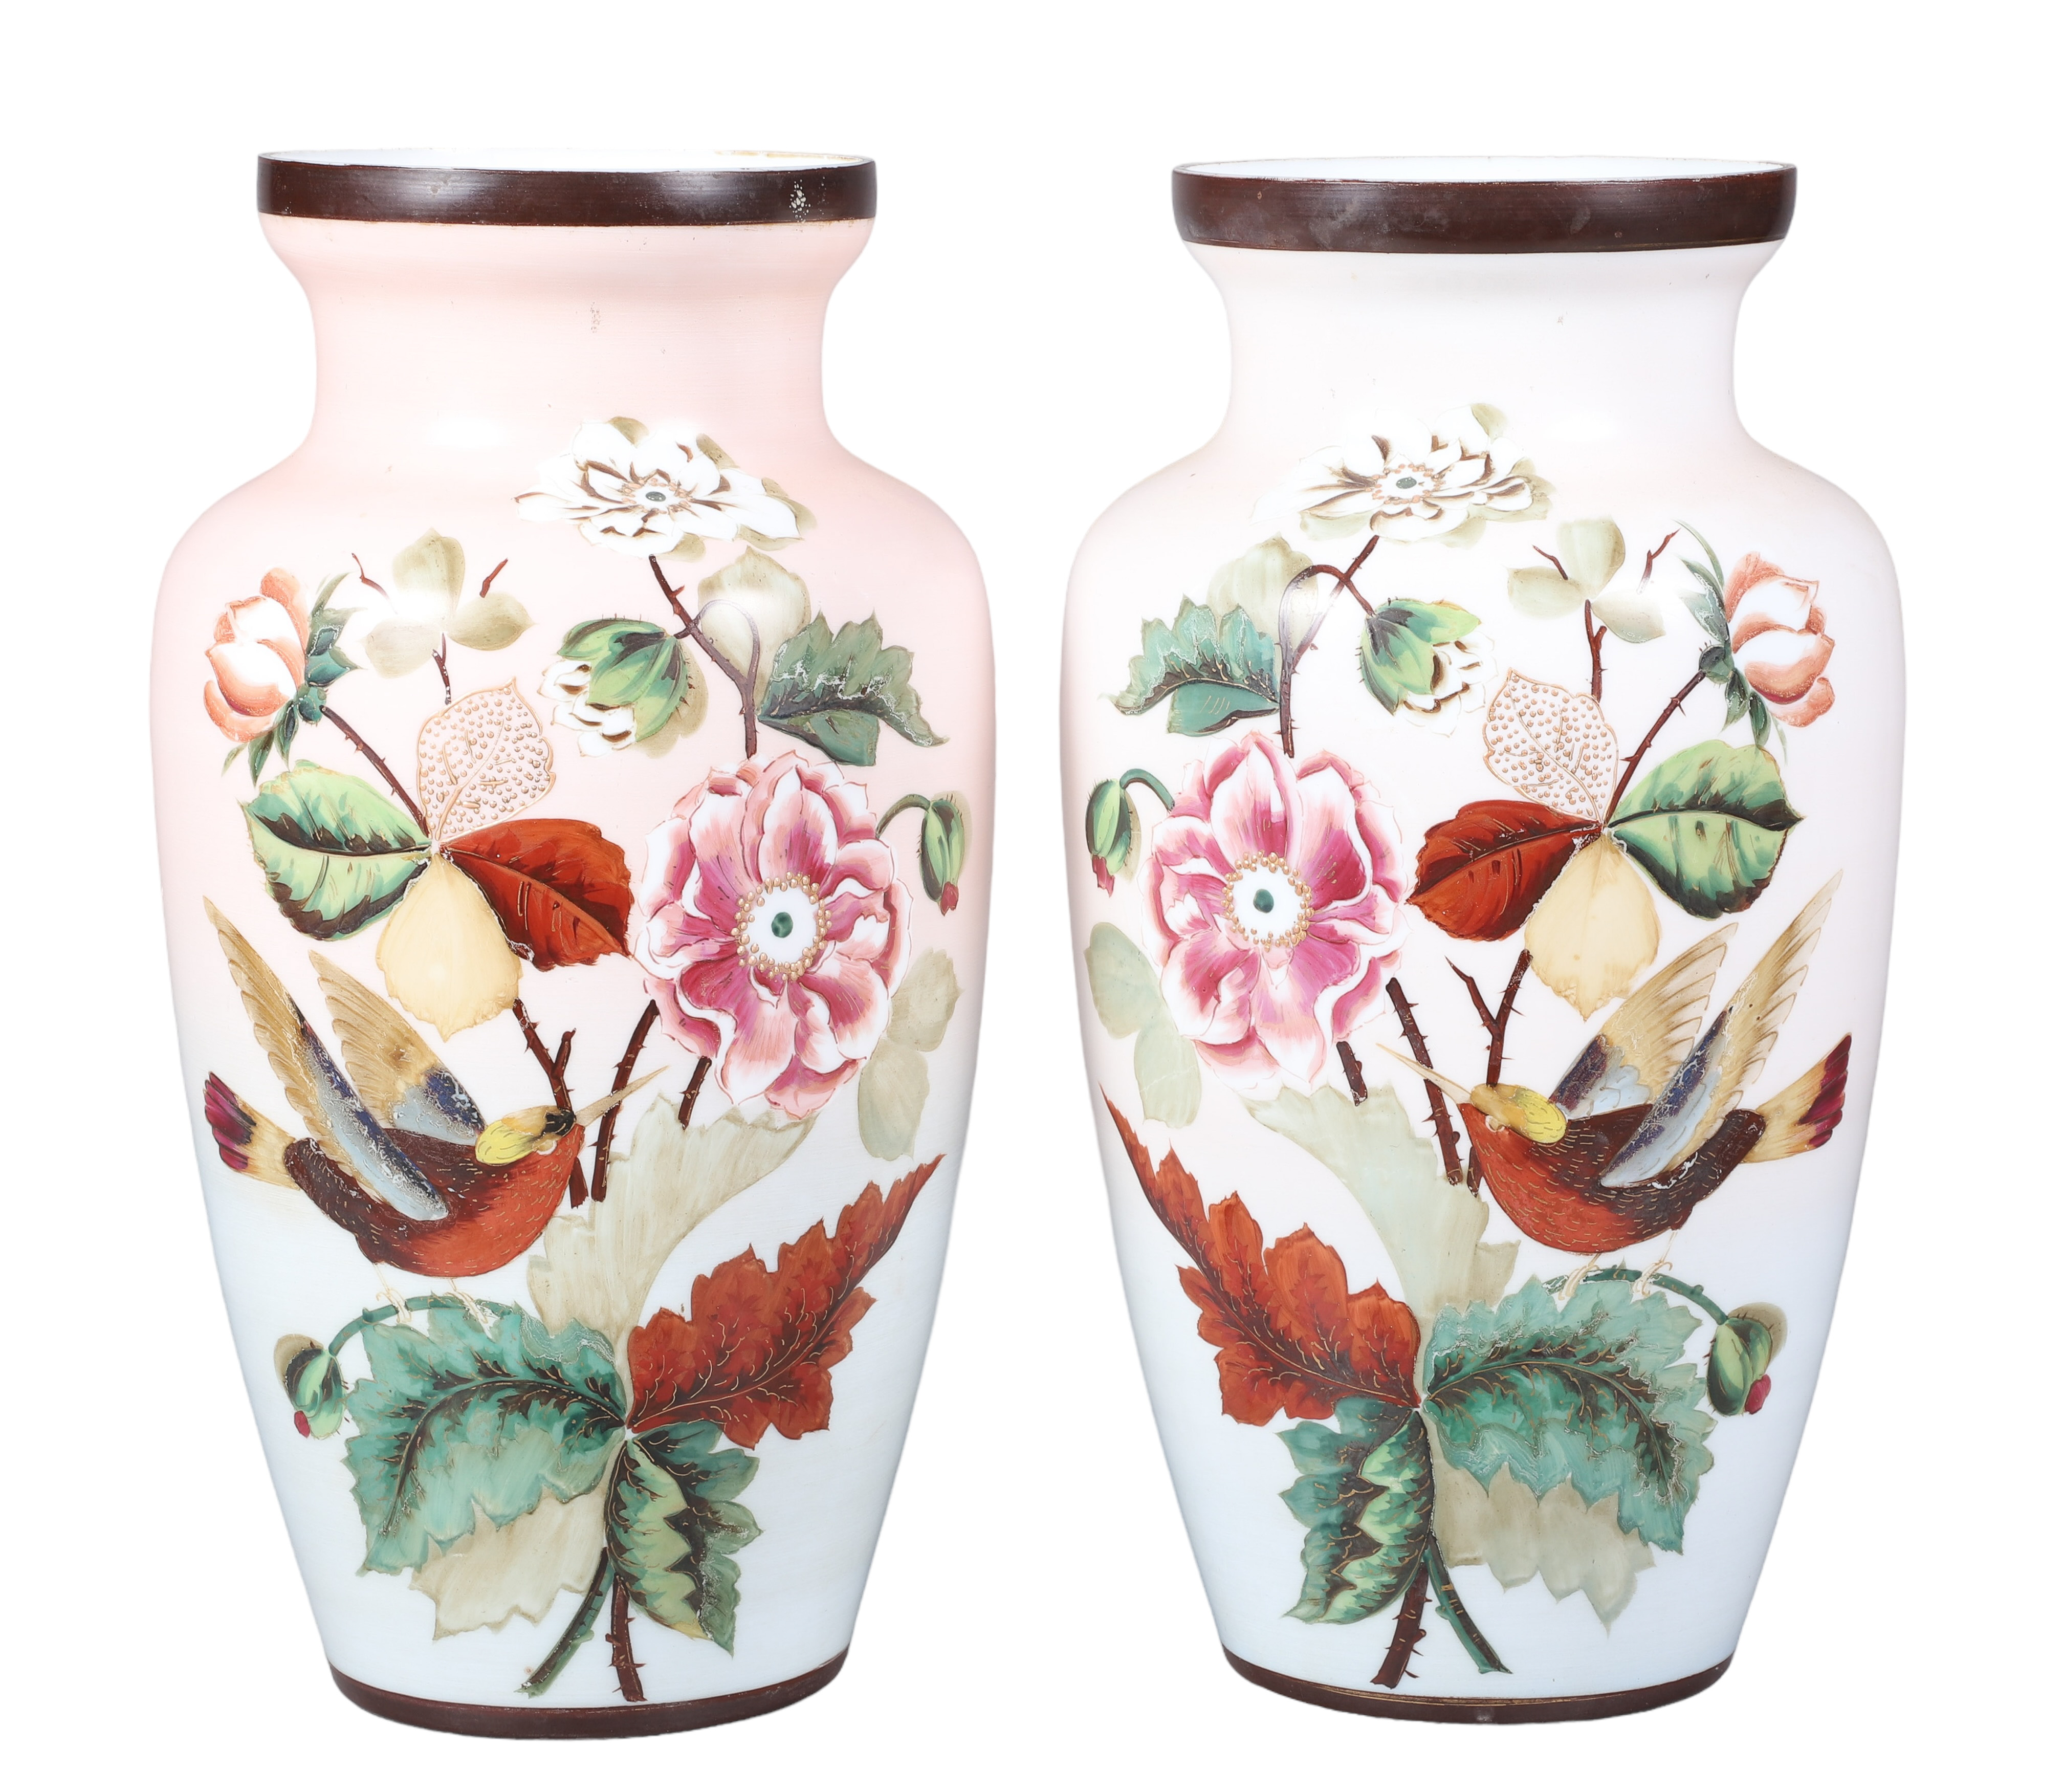 Bristol glass floral painted vase 2e1e28